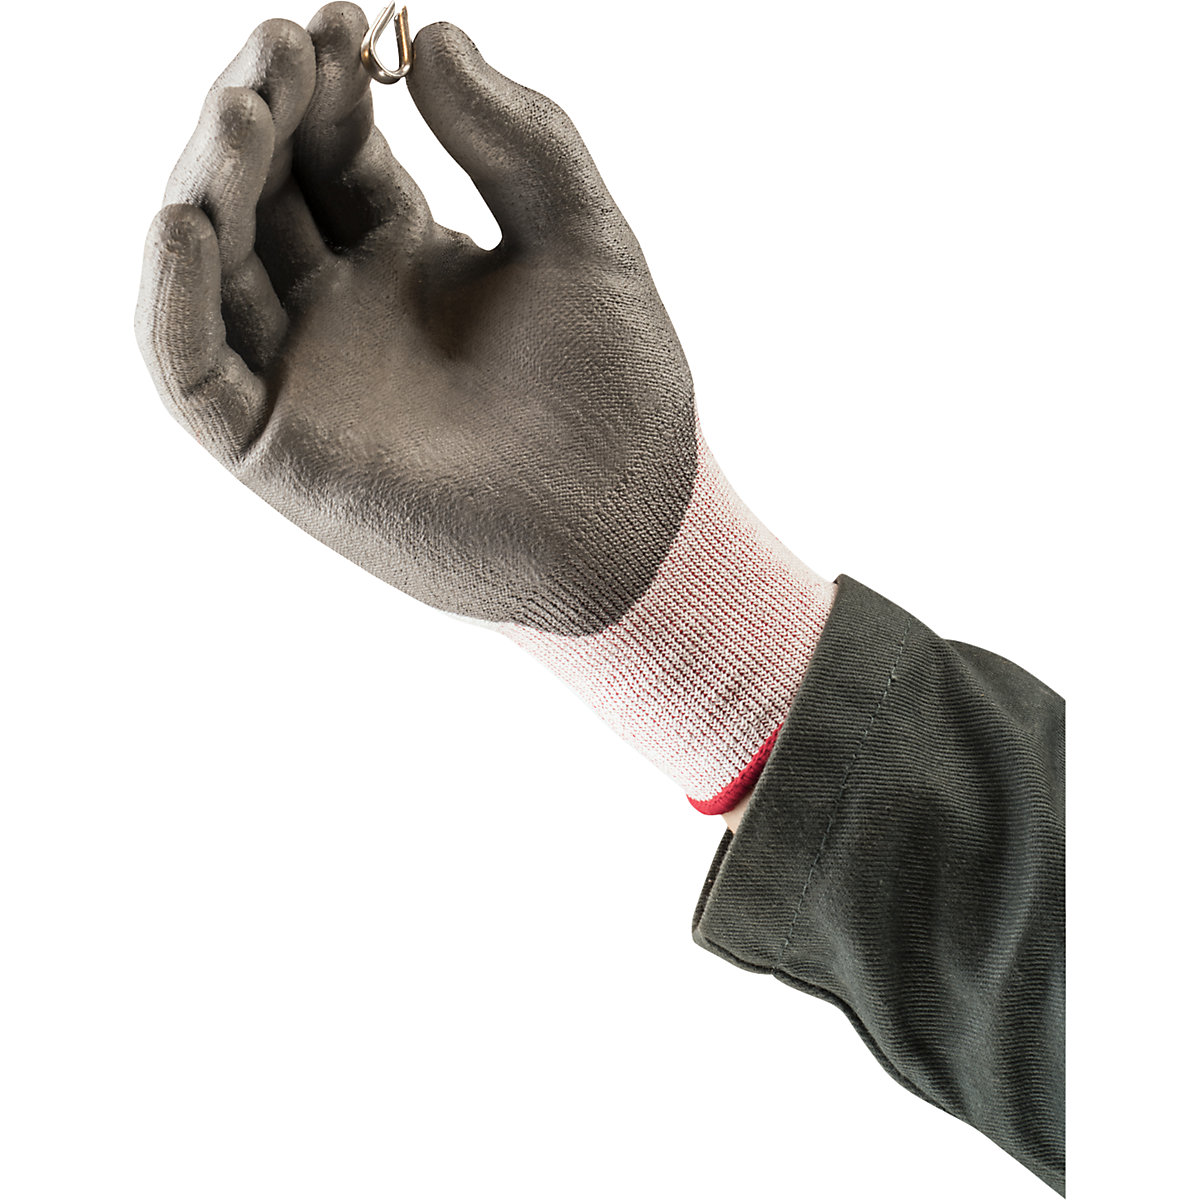 Pracovní rukavice HyFlex® 11-644 – Ansell (Obrázek výrobku 3)-2